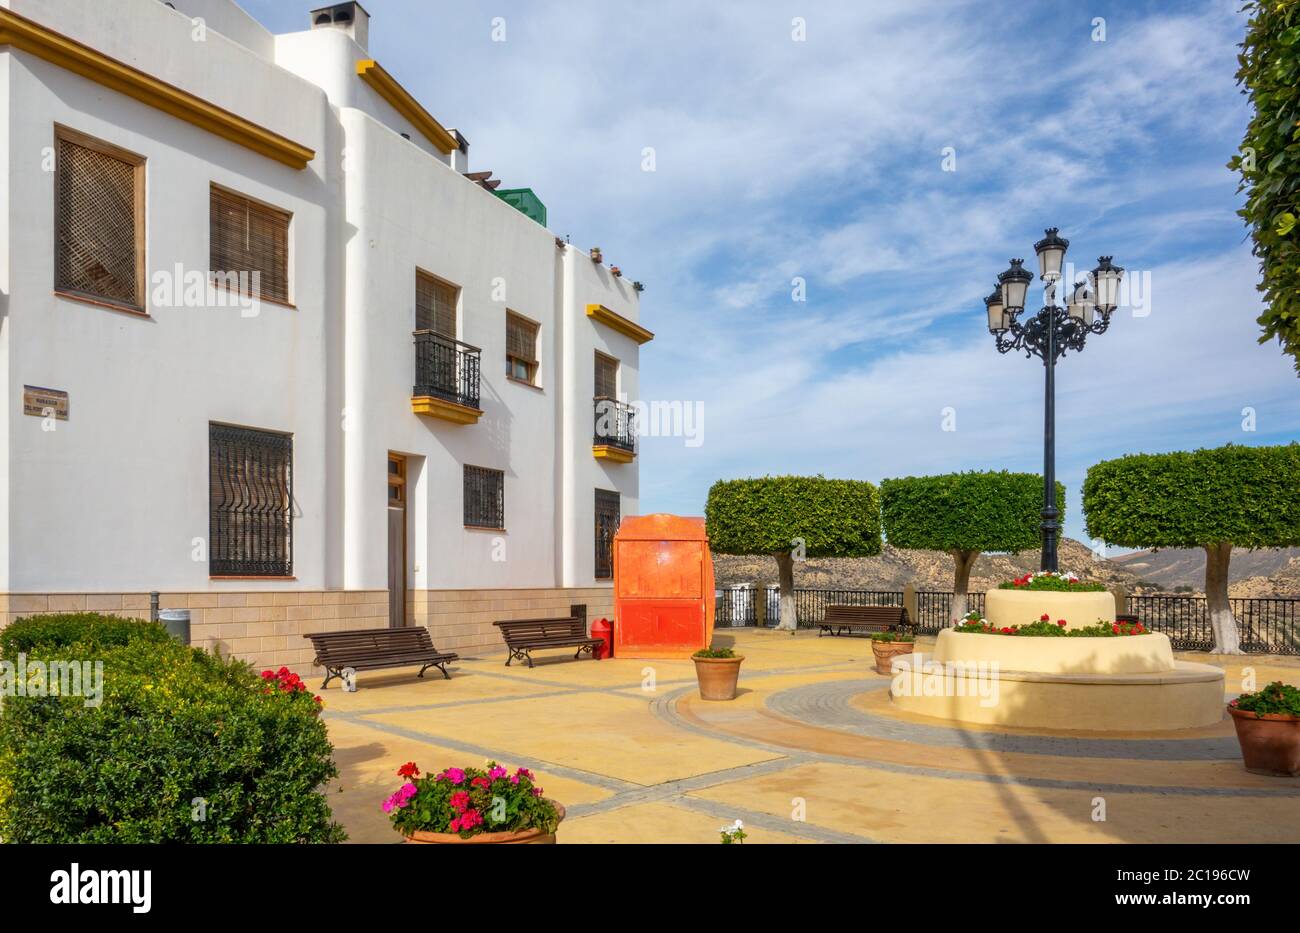 Rues d'une ville blanche appelée Lucainena de las Torres en Espagne. Quelques fleurs et balcons. Banque D'Images